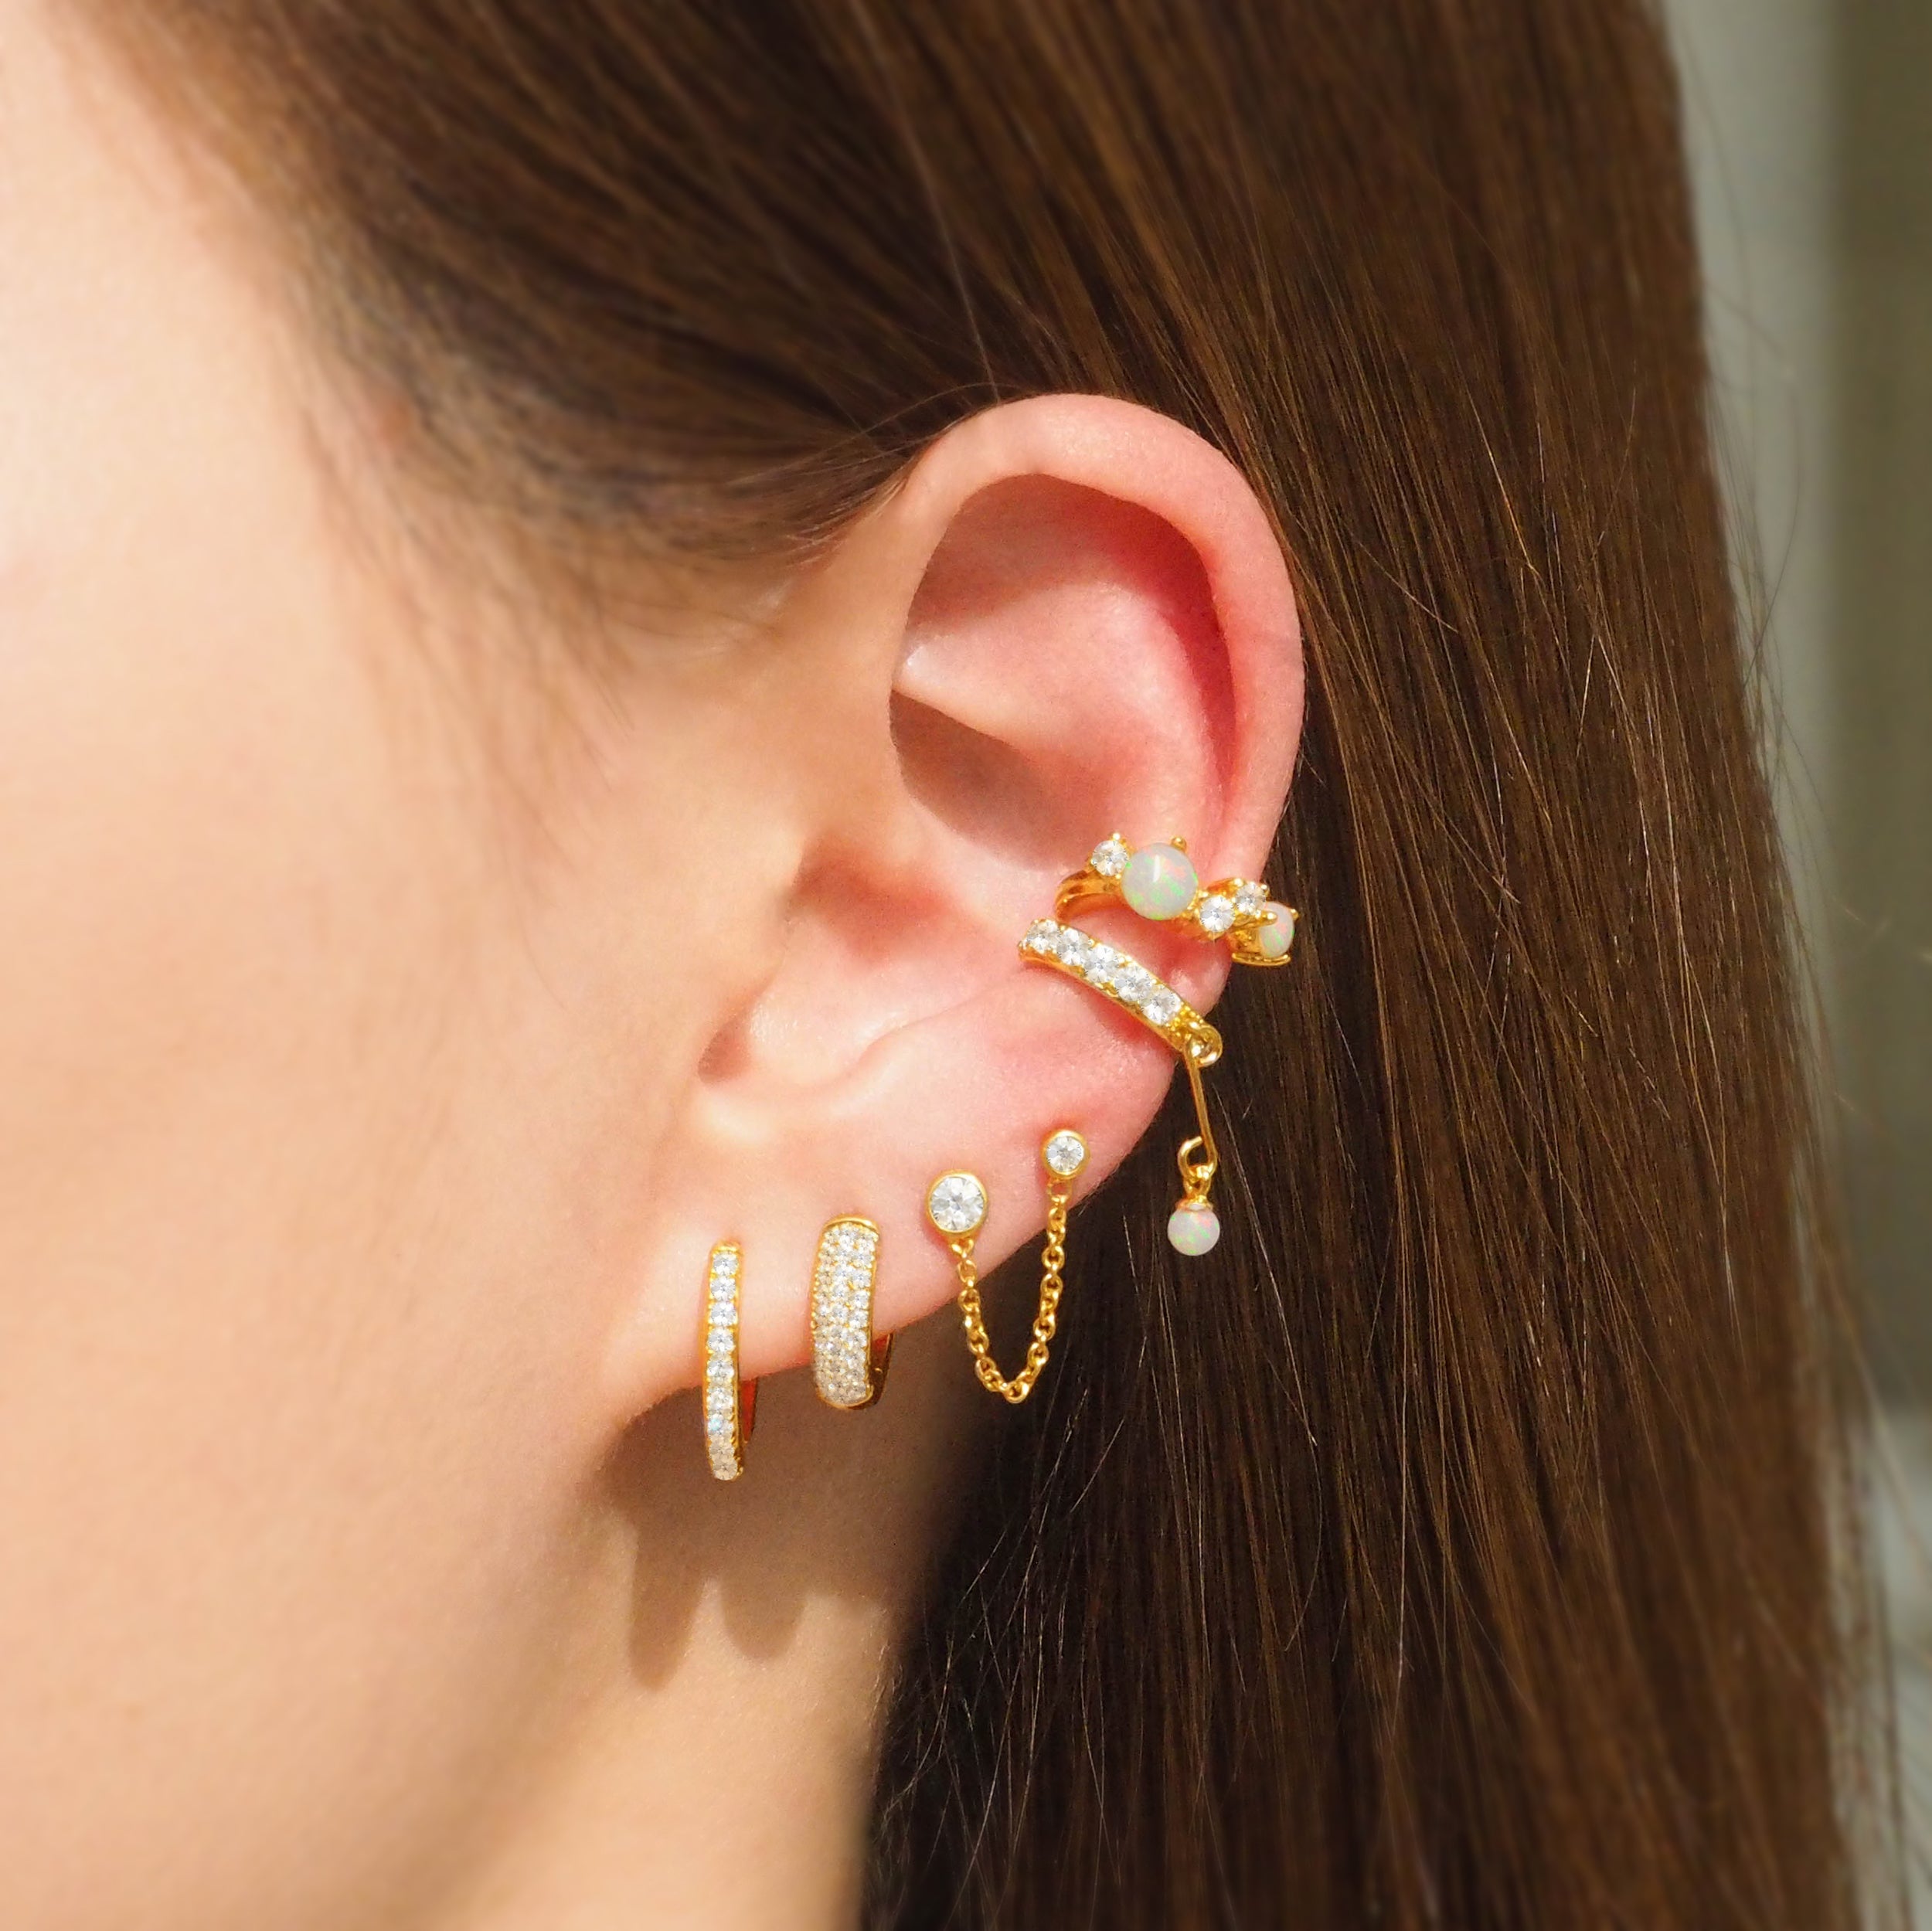 Bezel Double Chain Stud Earrings